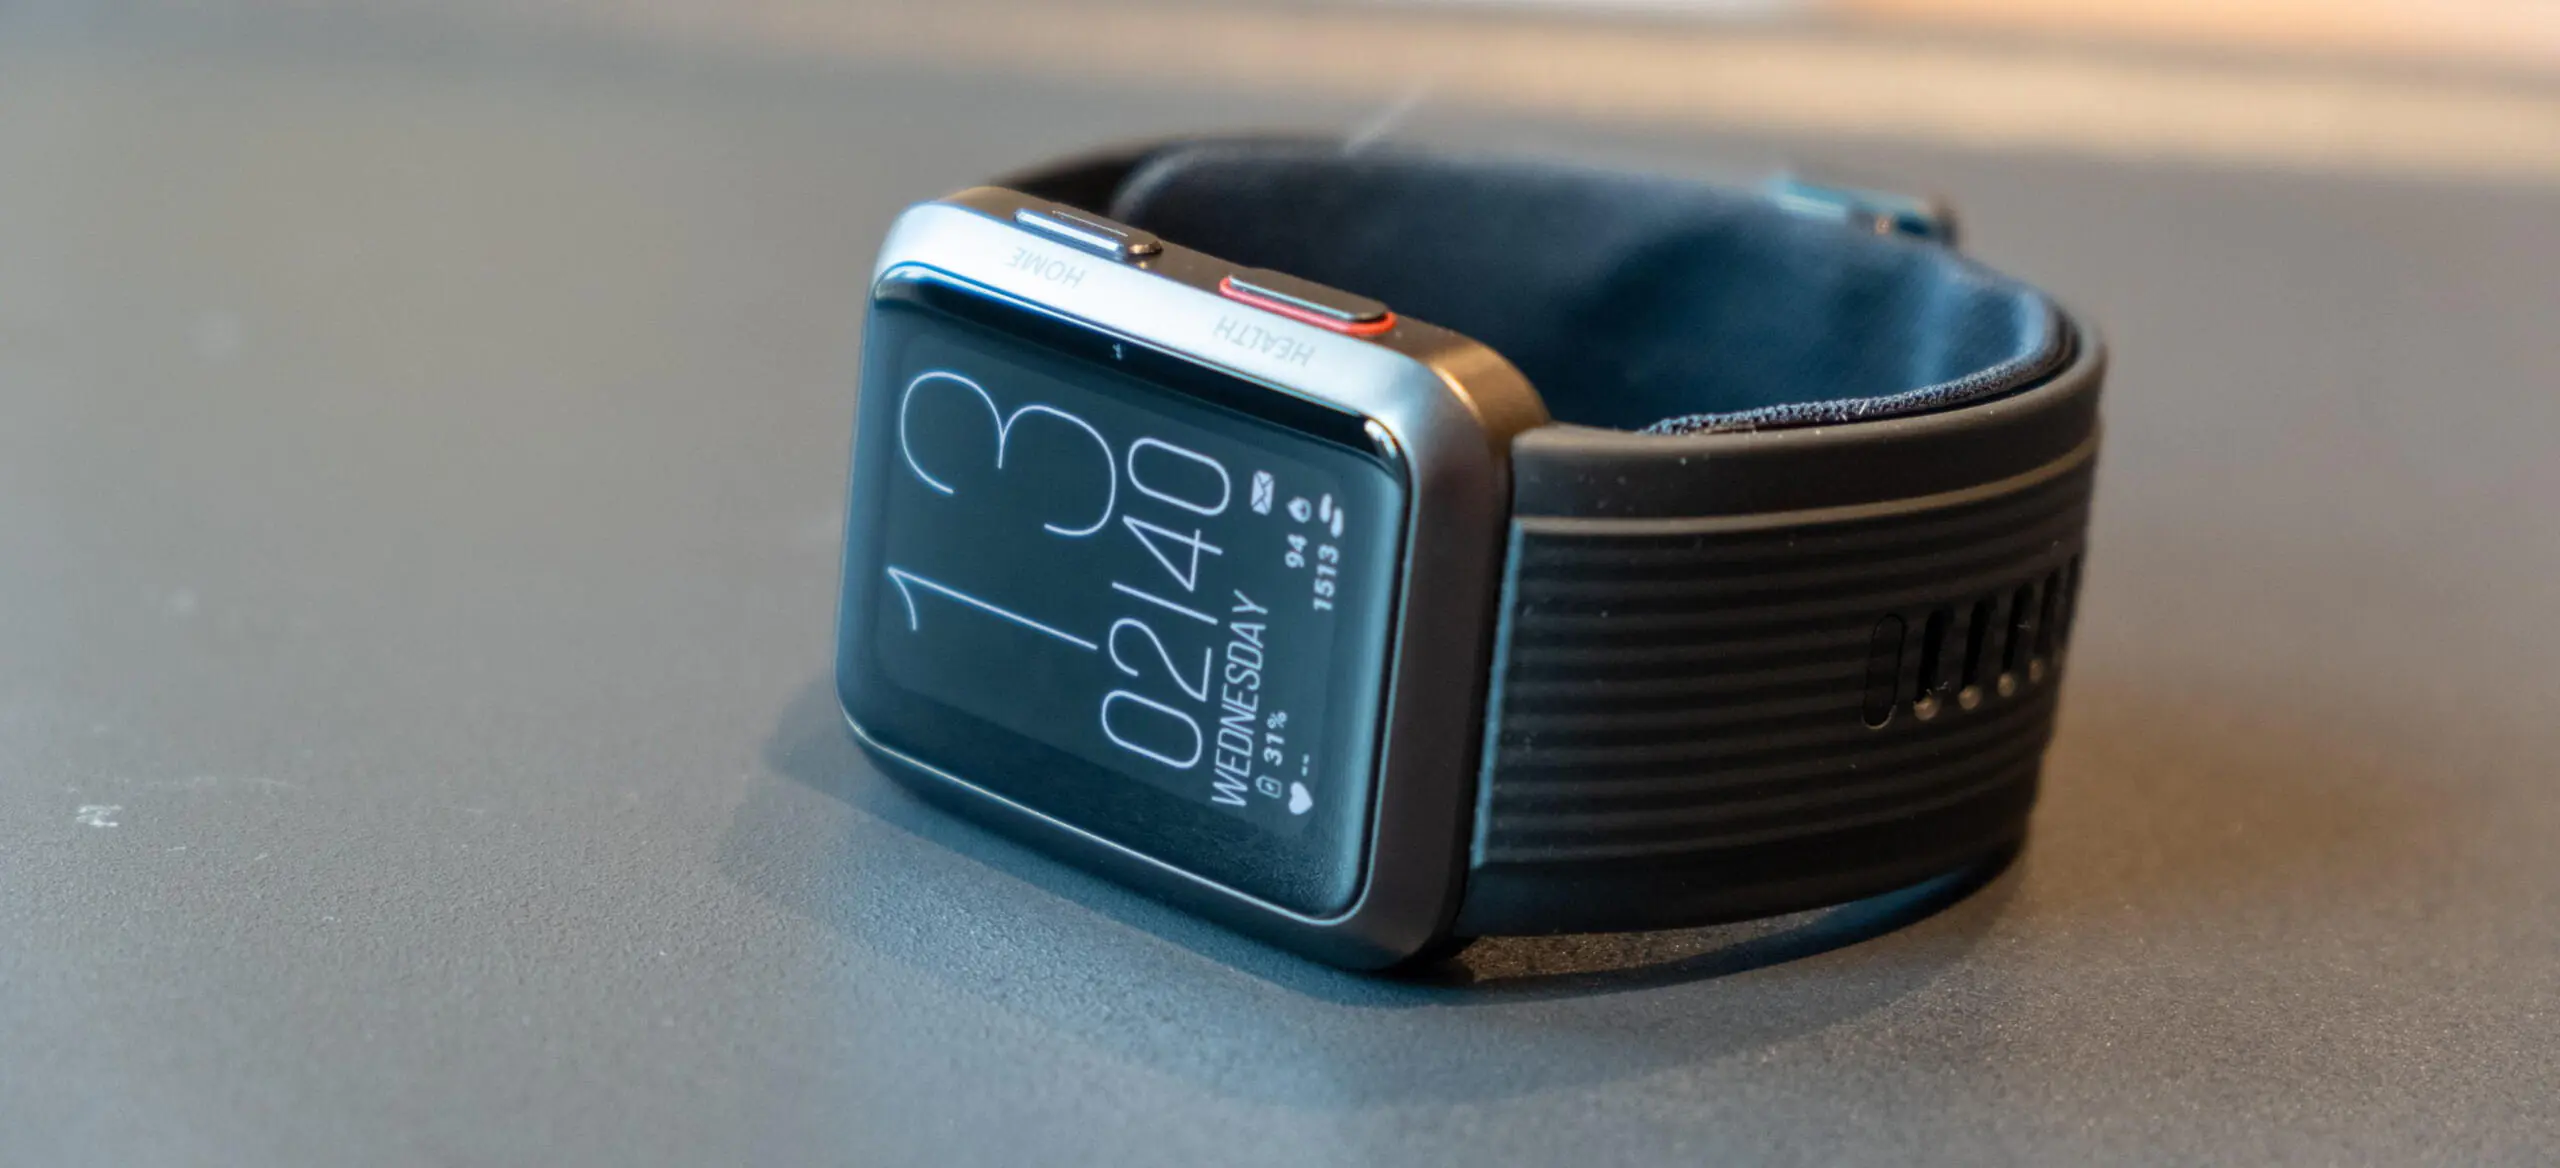 Huawei Watch D vs Tensiómetro - El reloj más avanzado que hemos